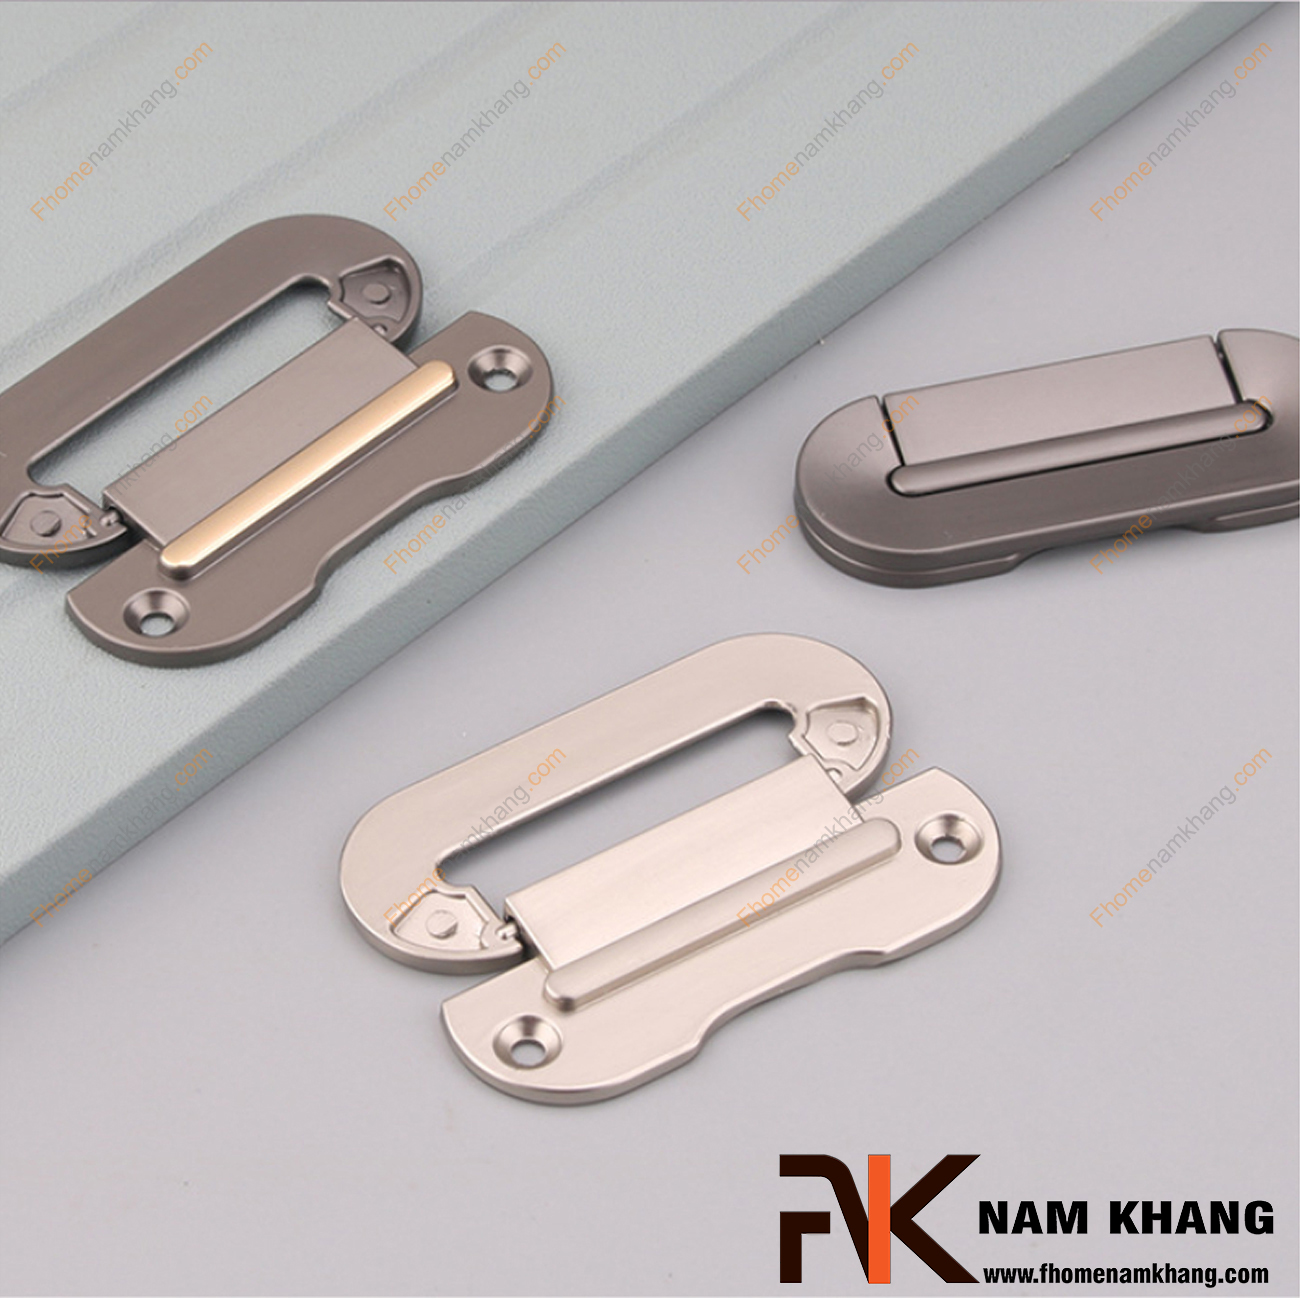 Tay nắm tủ hiện đại màu màu xám NK381-64X là một dạng tay nắm tủ thiết kế rất tinh tế và hiện đại. Sản phẩm tay nắm gồm 2 phần rời nhau, phần đế được cố định bởi 2 vít vặn và phần thân nắm có thể đóng gập dễ dàng.